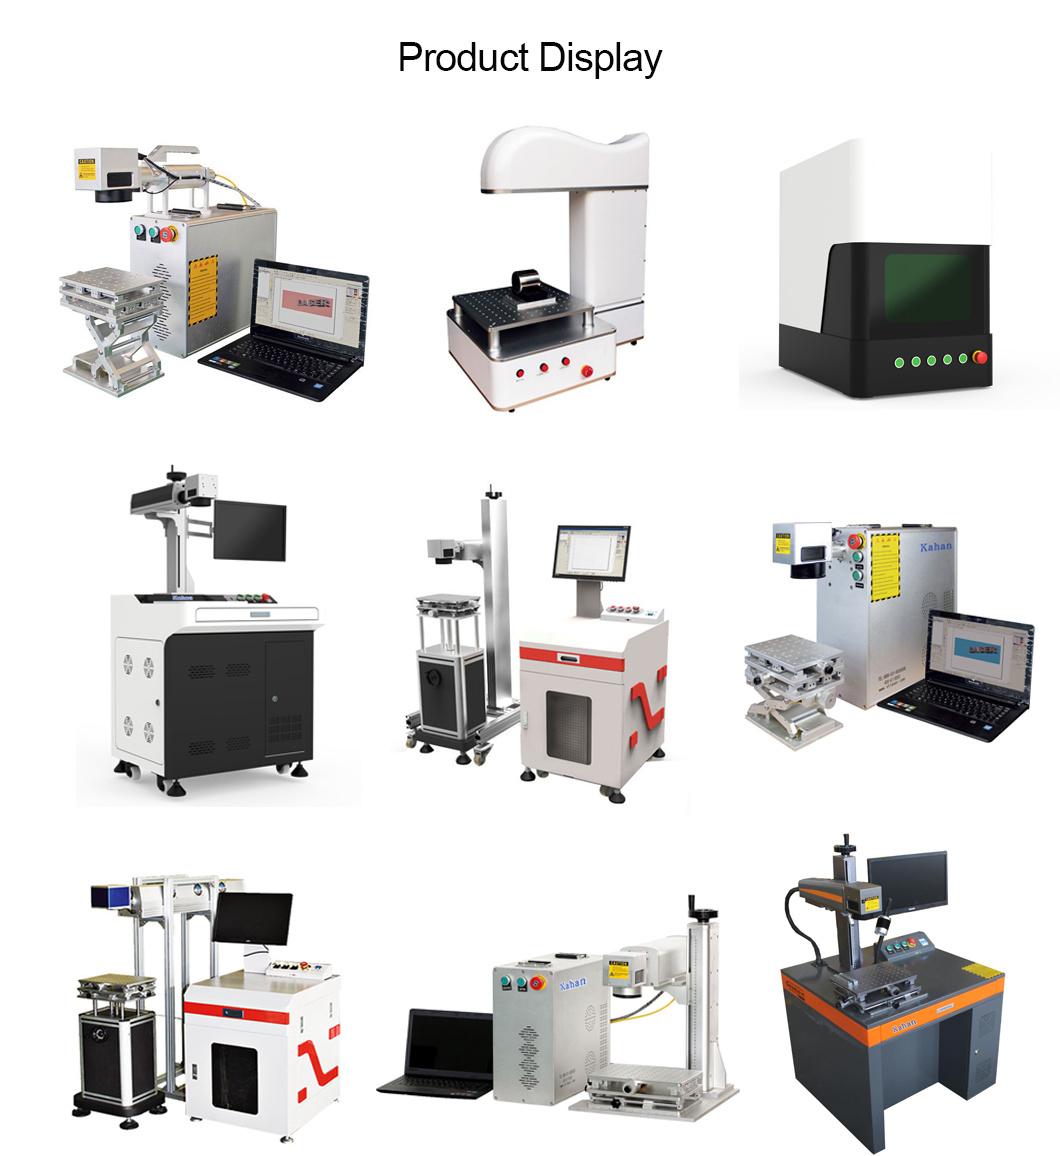 Engraving Metal and Various Non-Metallic Material Fiber Laser Marking Machine